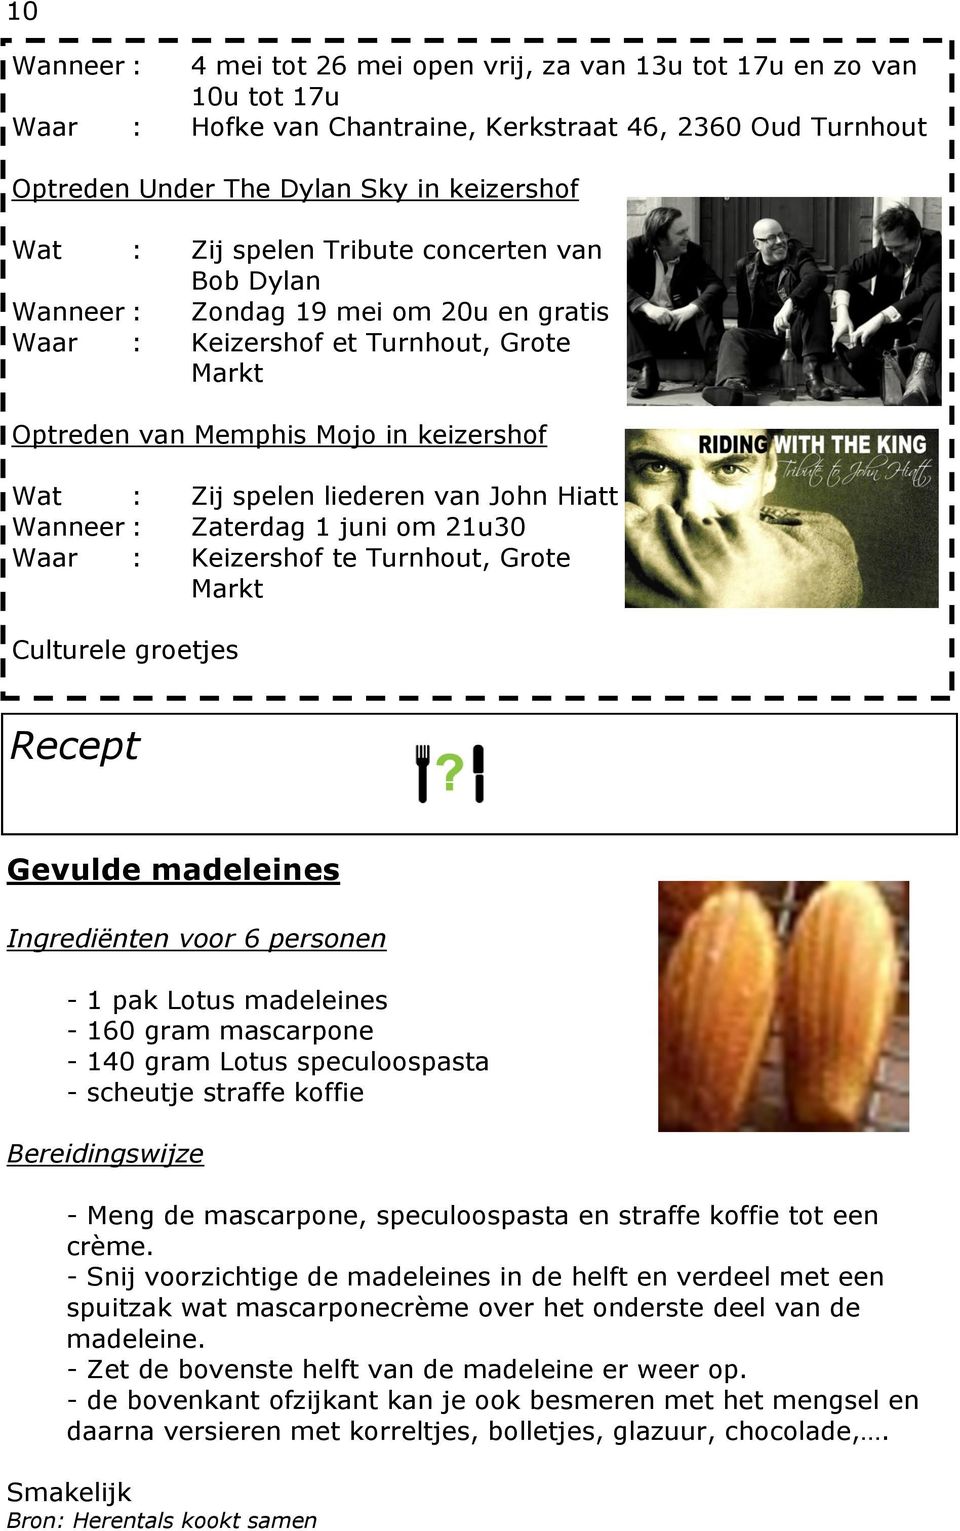 Hiatt Wanneer : Zaterdag 1 juni om 21u30 Waar : Keizershof te Turnhout, Grote Markt Culturele groetjes Recept Gevulde madeleines Ingrediënten voor 6 personen - 1 pak Lotus madeleines - 160 gram